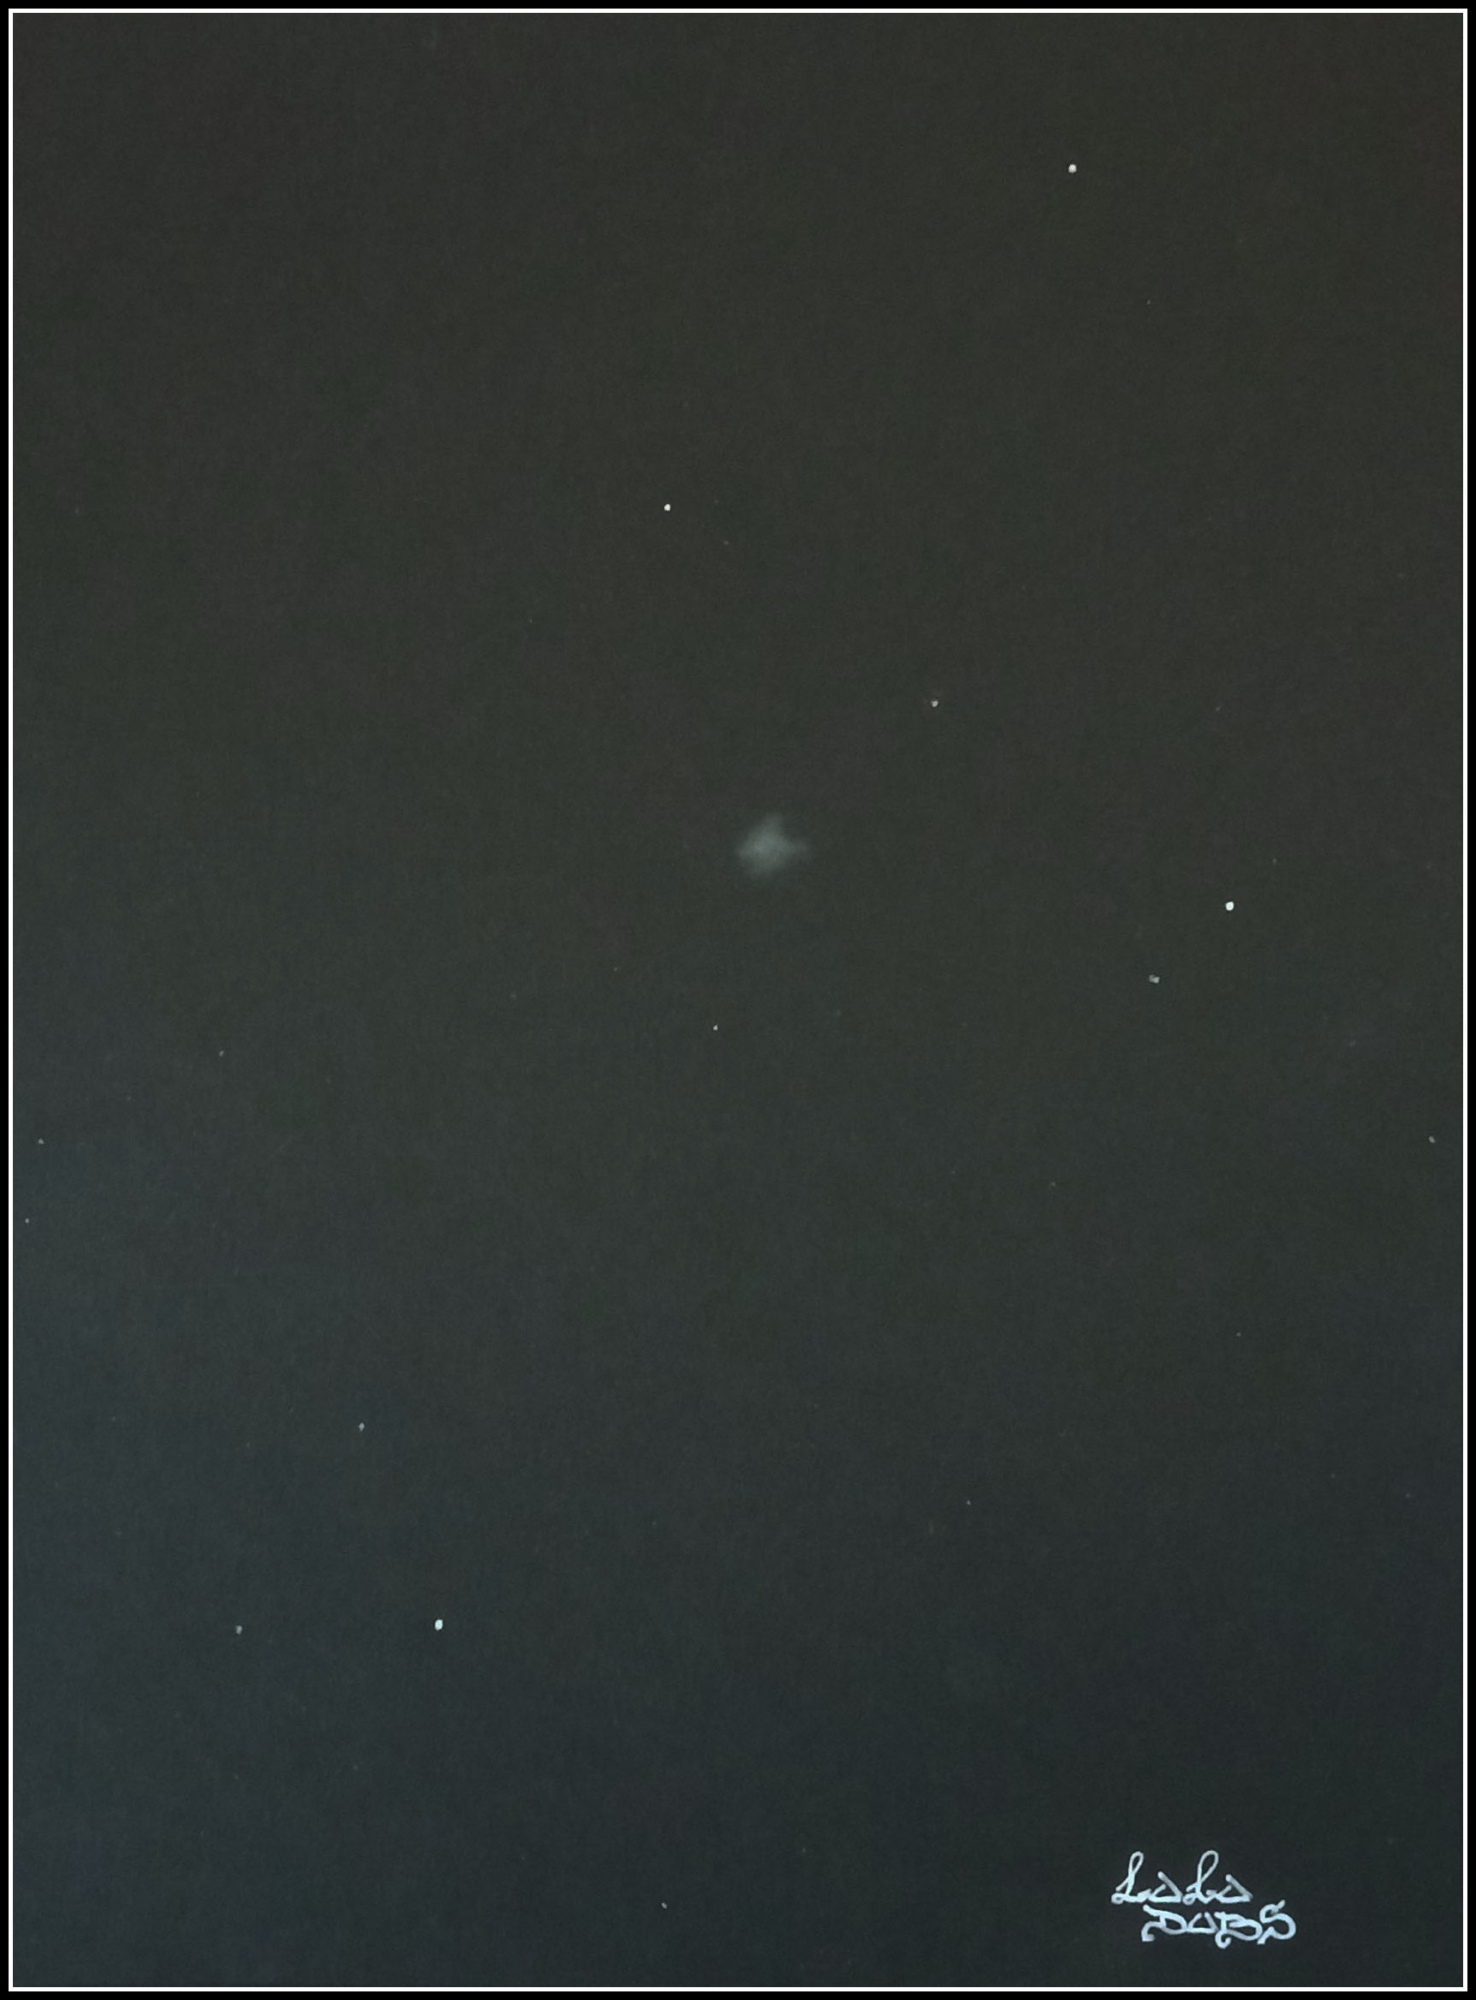 632db8b9f1e6e_NGC6910latortue.thumb.jpg.83c6f0380857574dfb8cebf349e1d71f.jpg